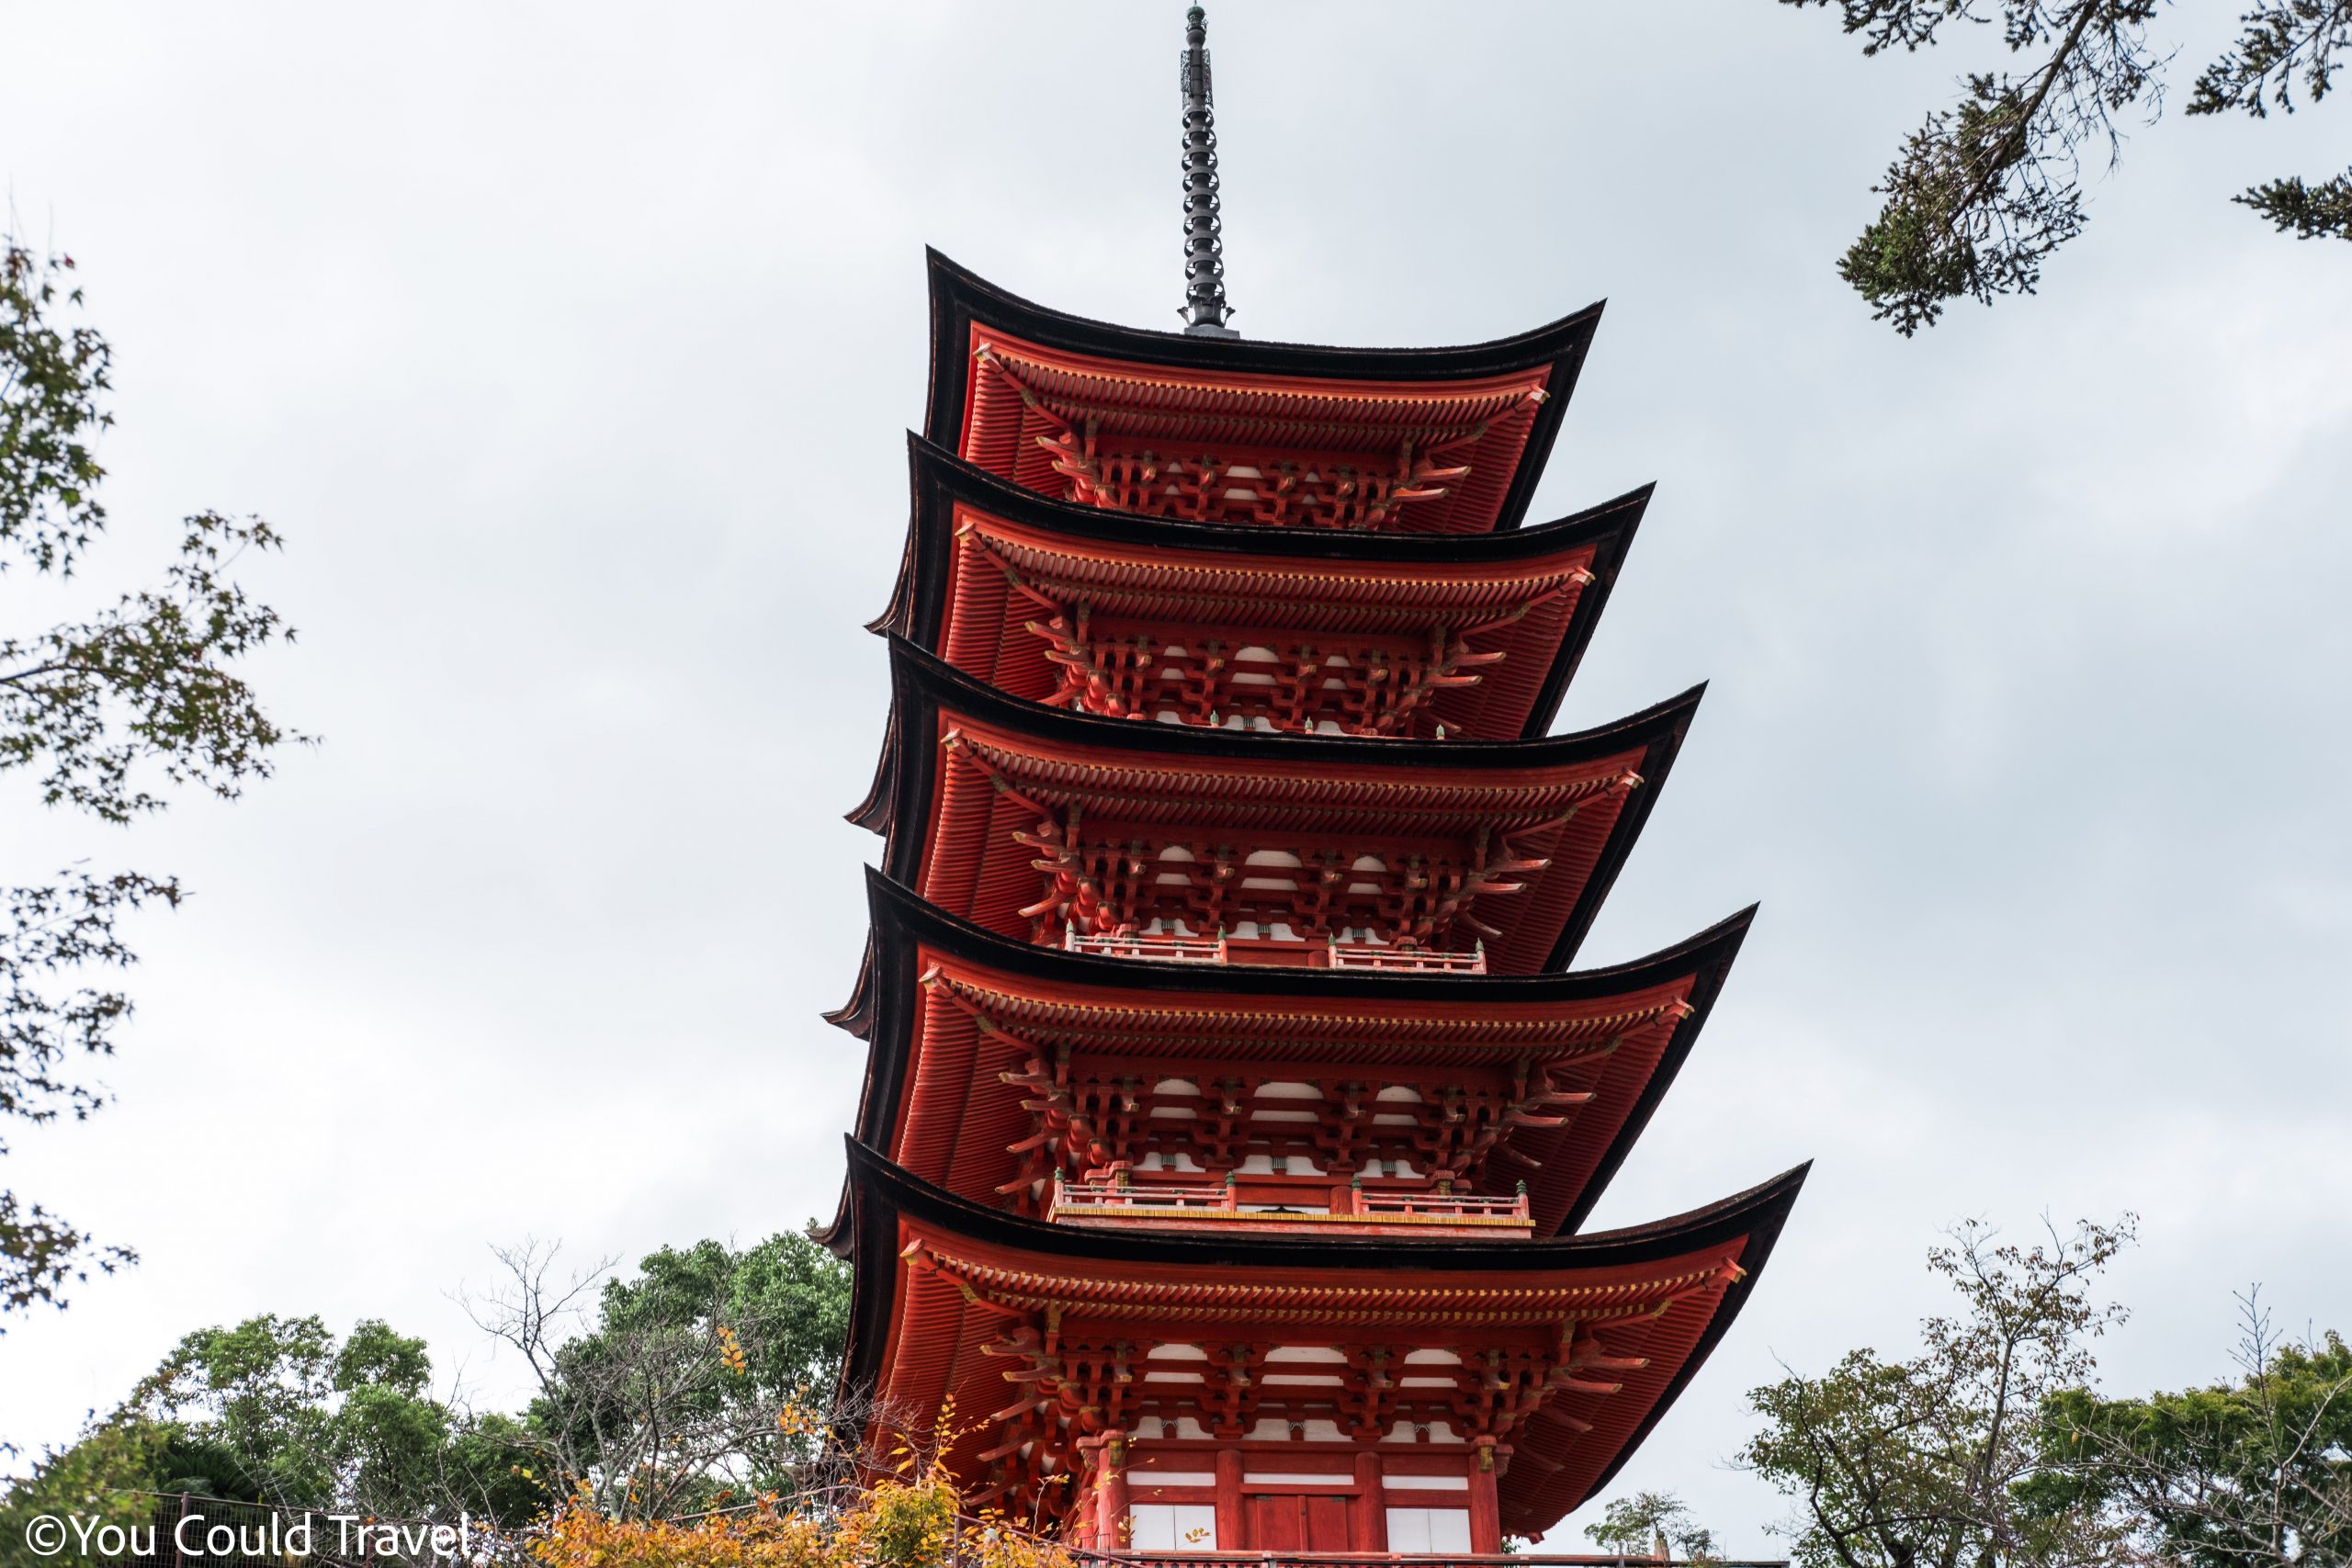 Toyokuni shrine with its 5 story pagoda on Miyajima island